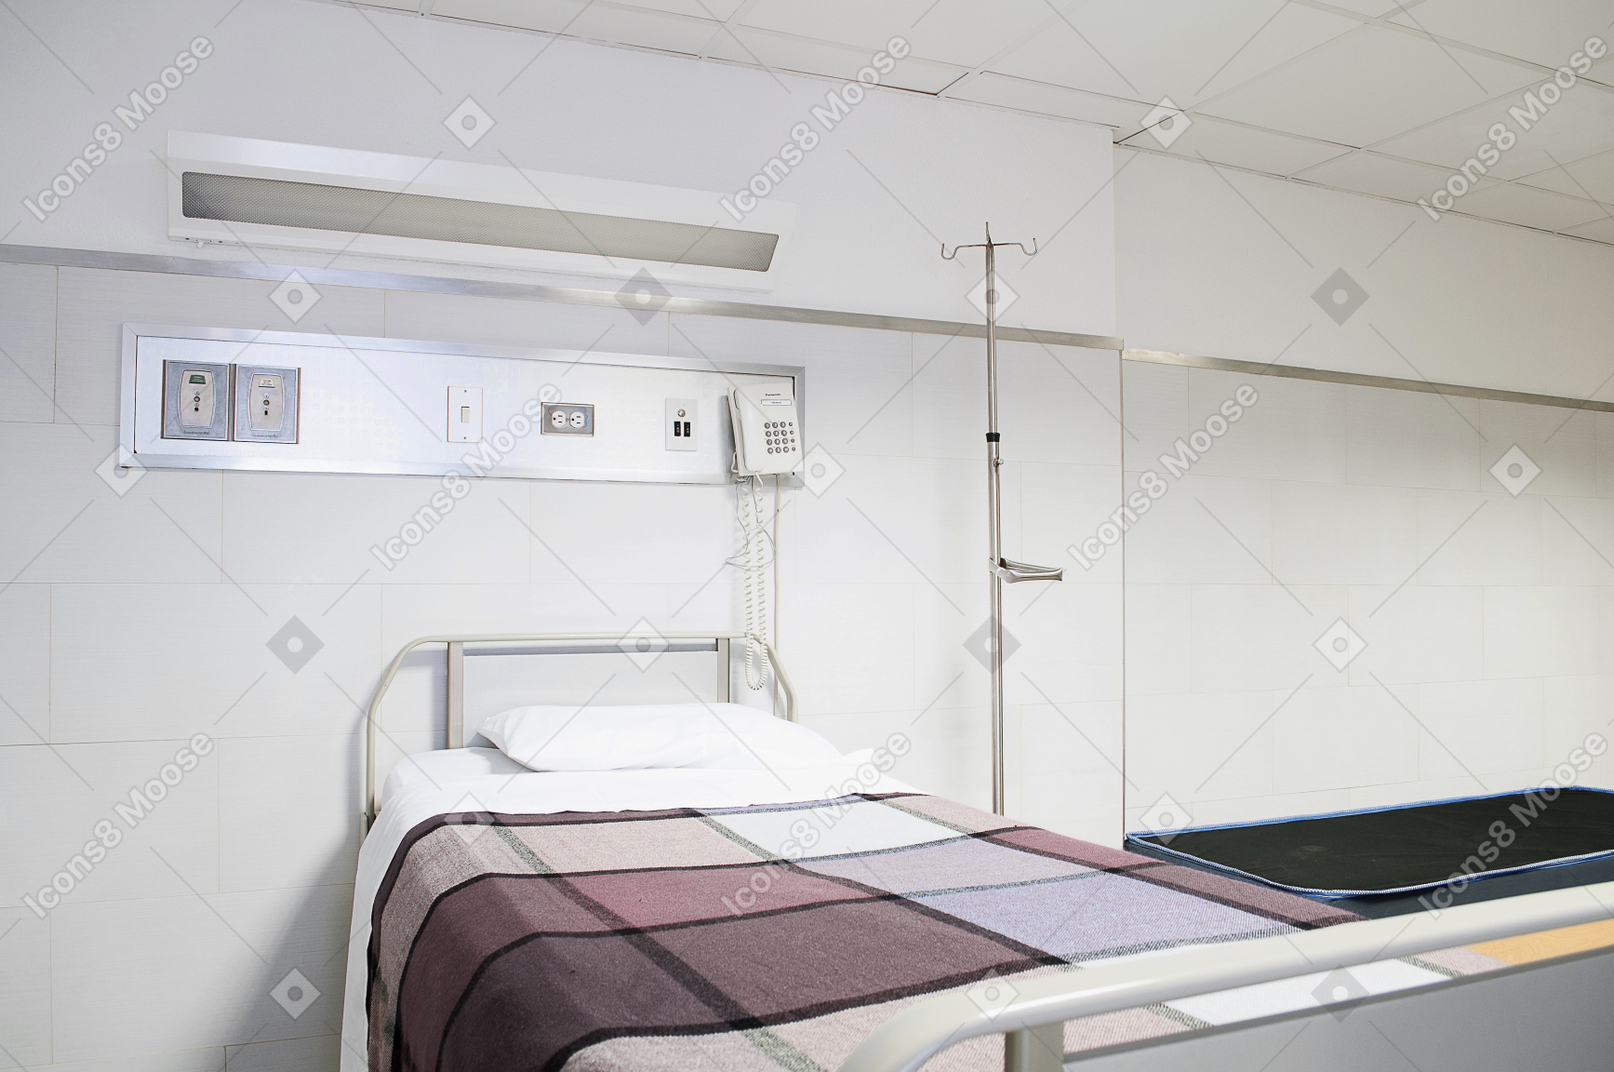 Krankenhauszimmer hintergrund